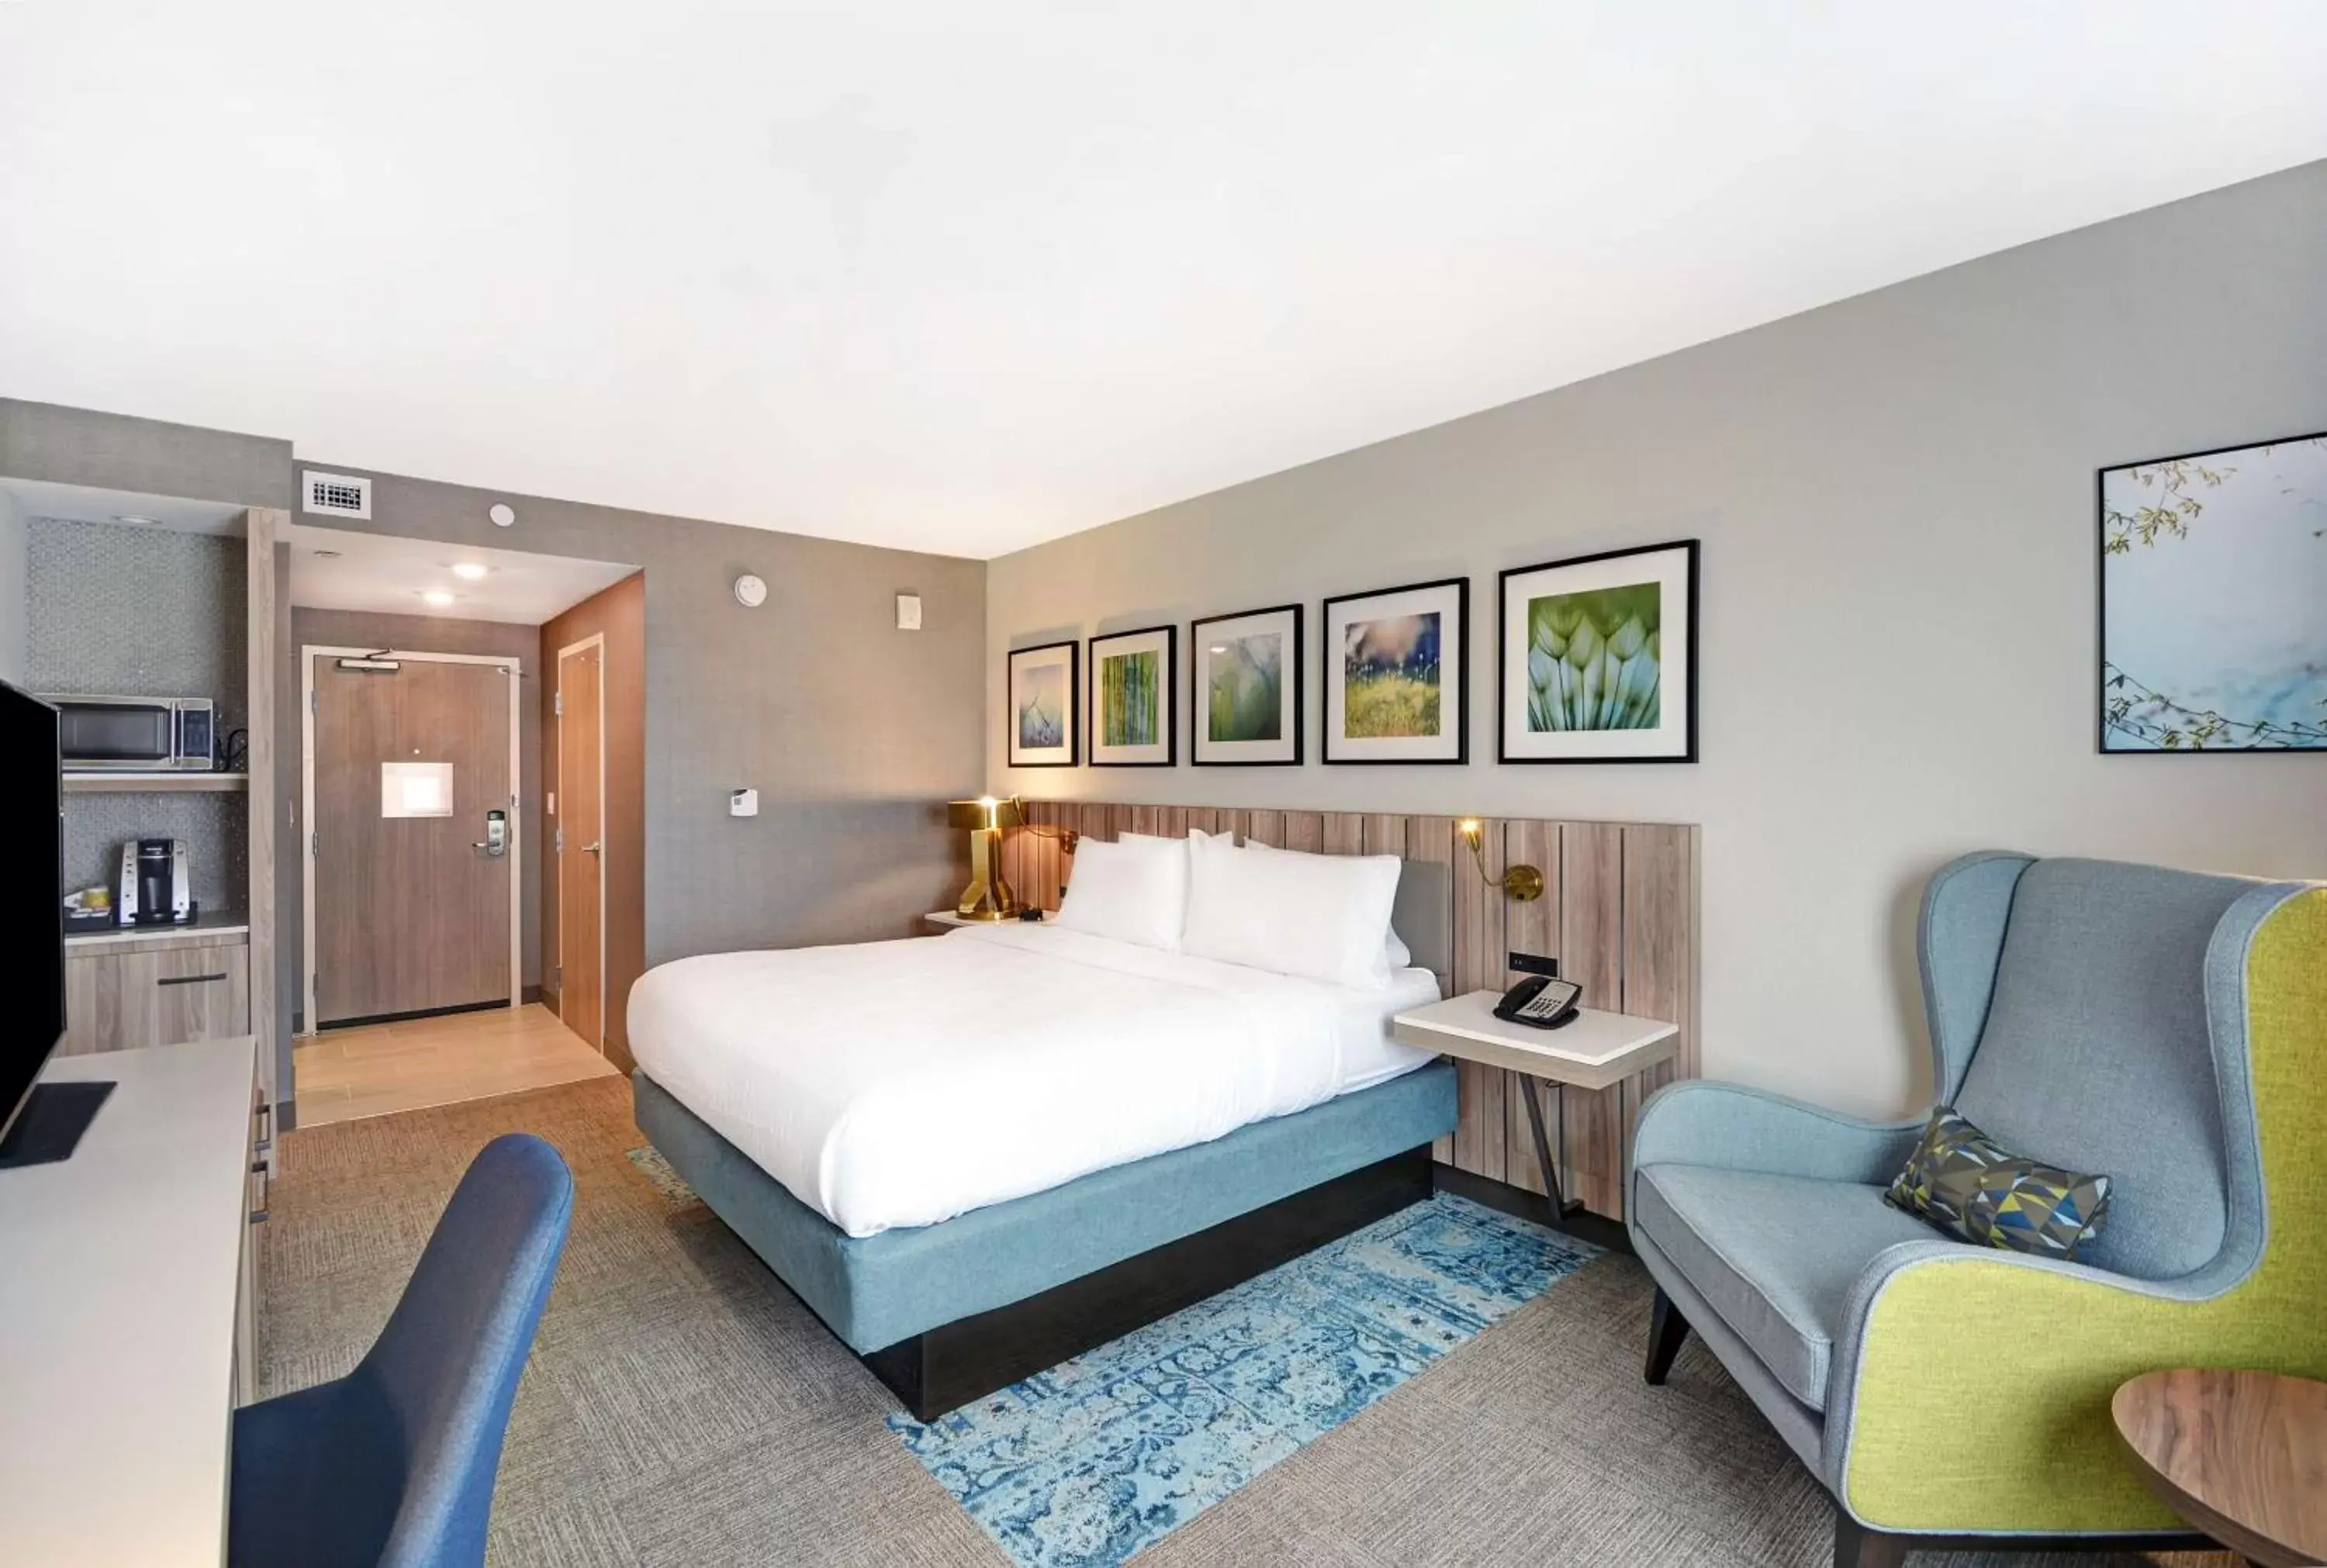 Bedroom in Hilton Garden Inn Houston Hobby Airport